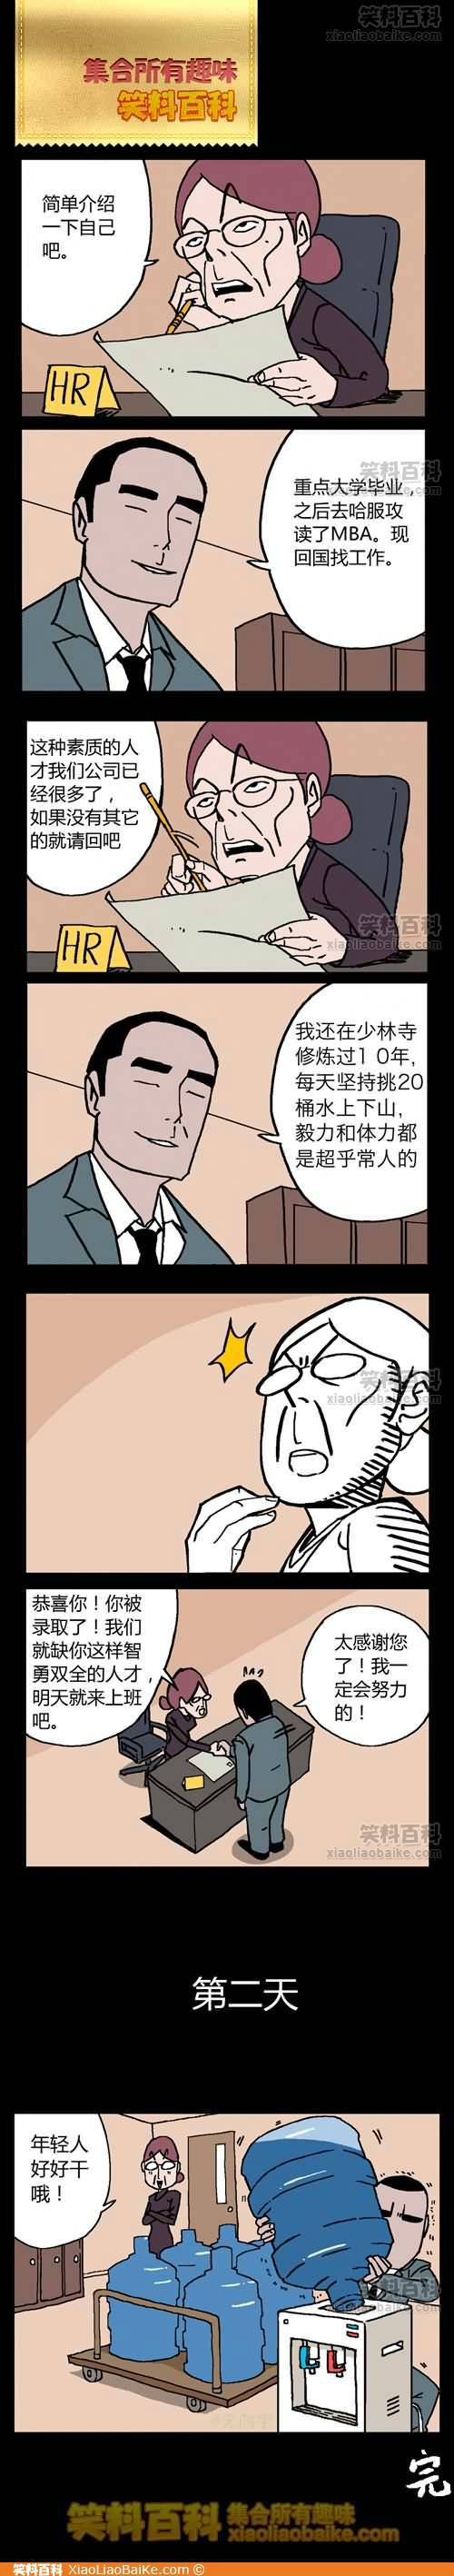 邪恶漫画爆笑囧图第248刊：造型改变